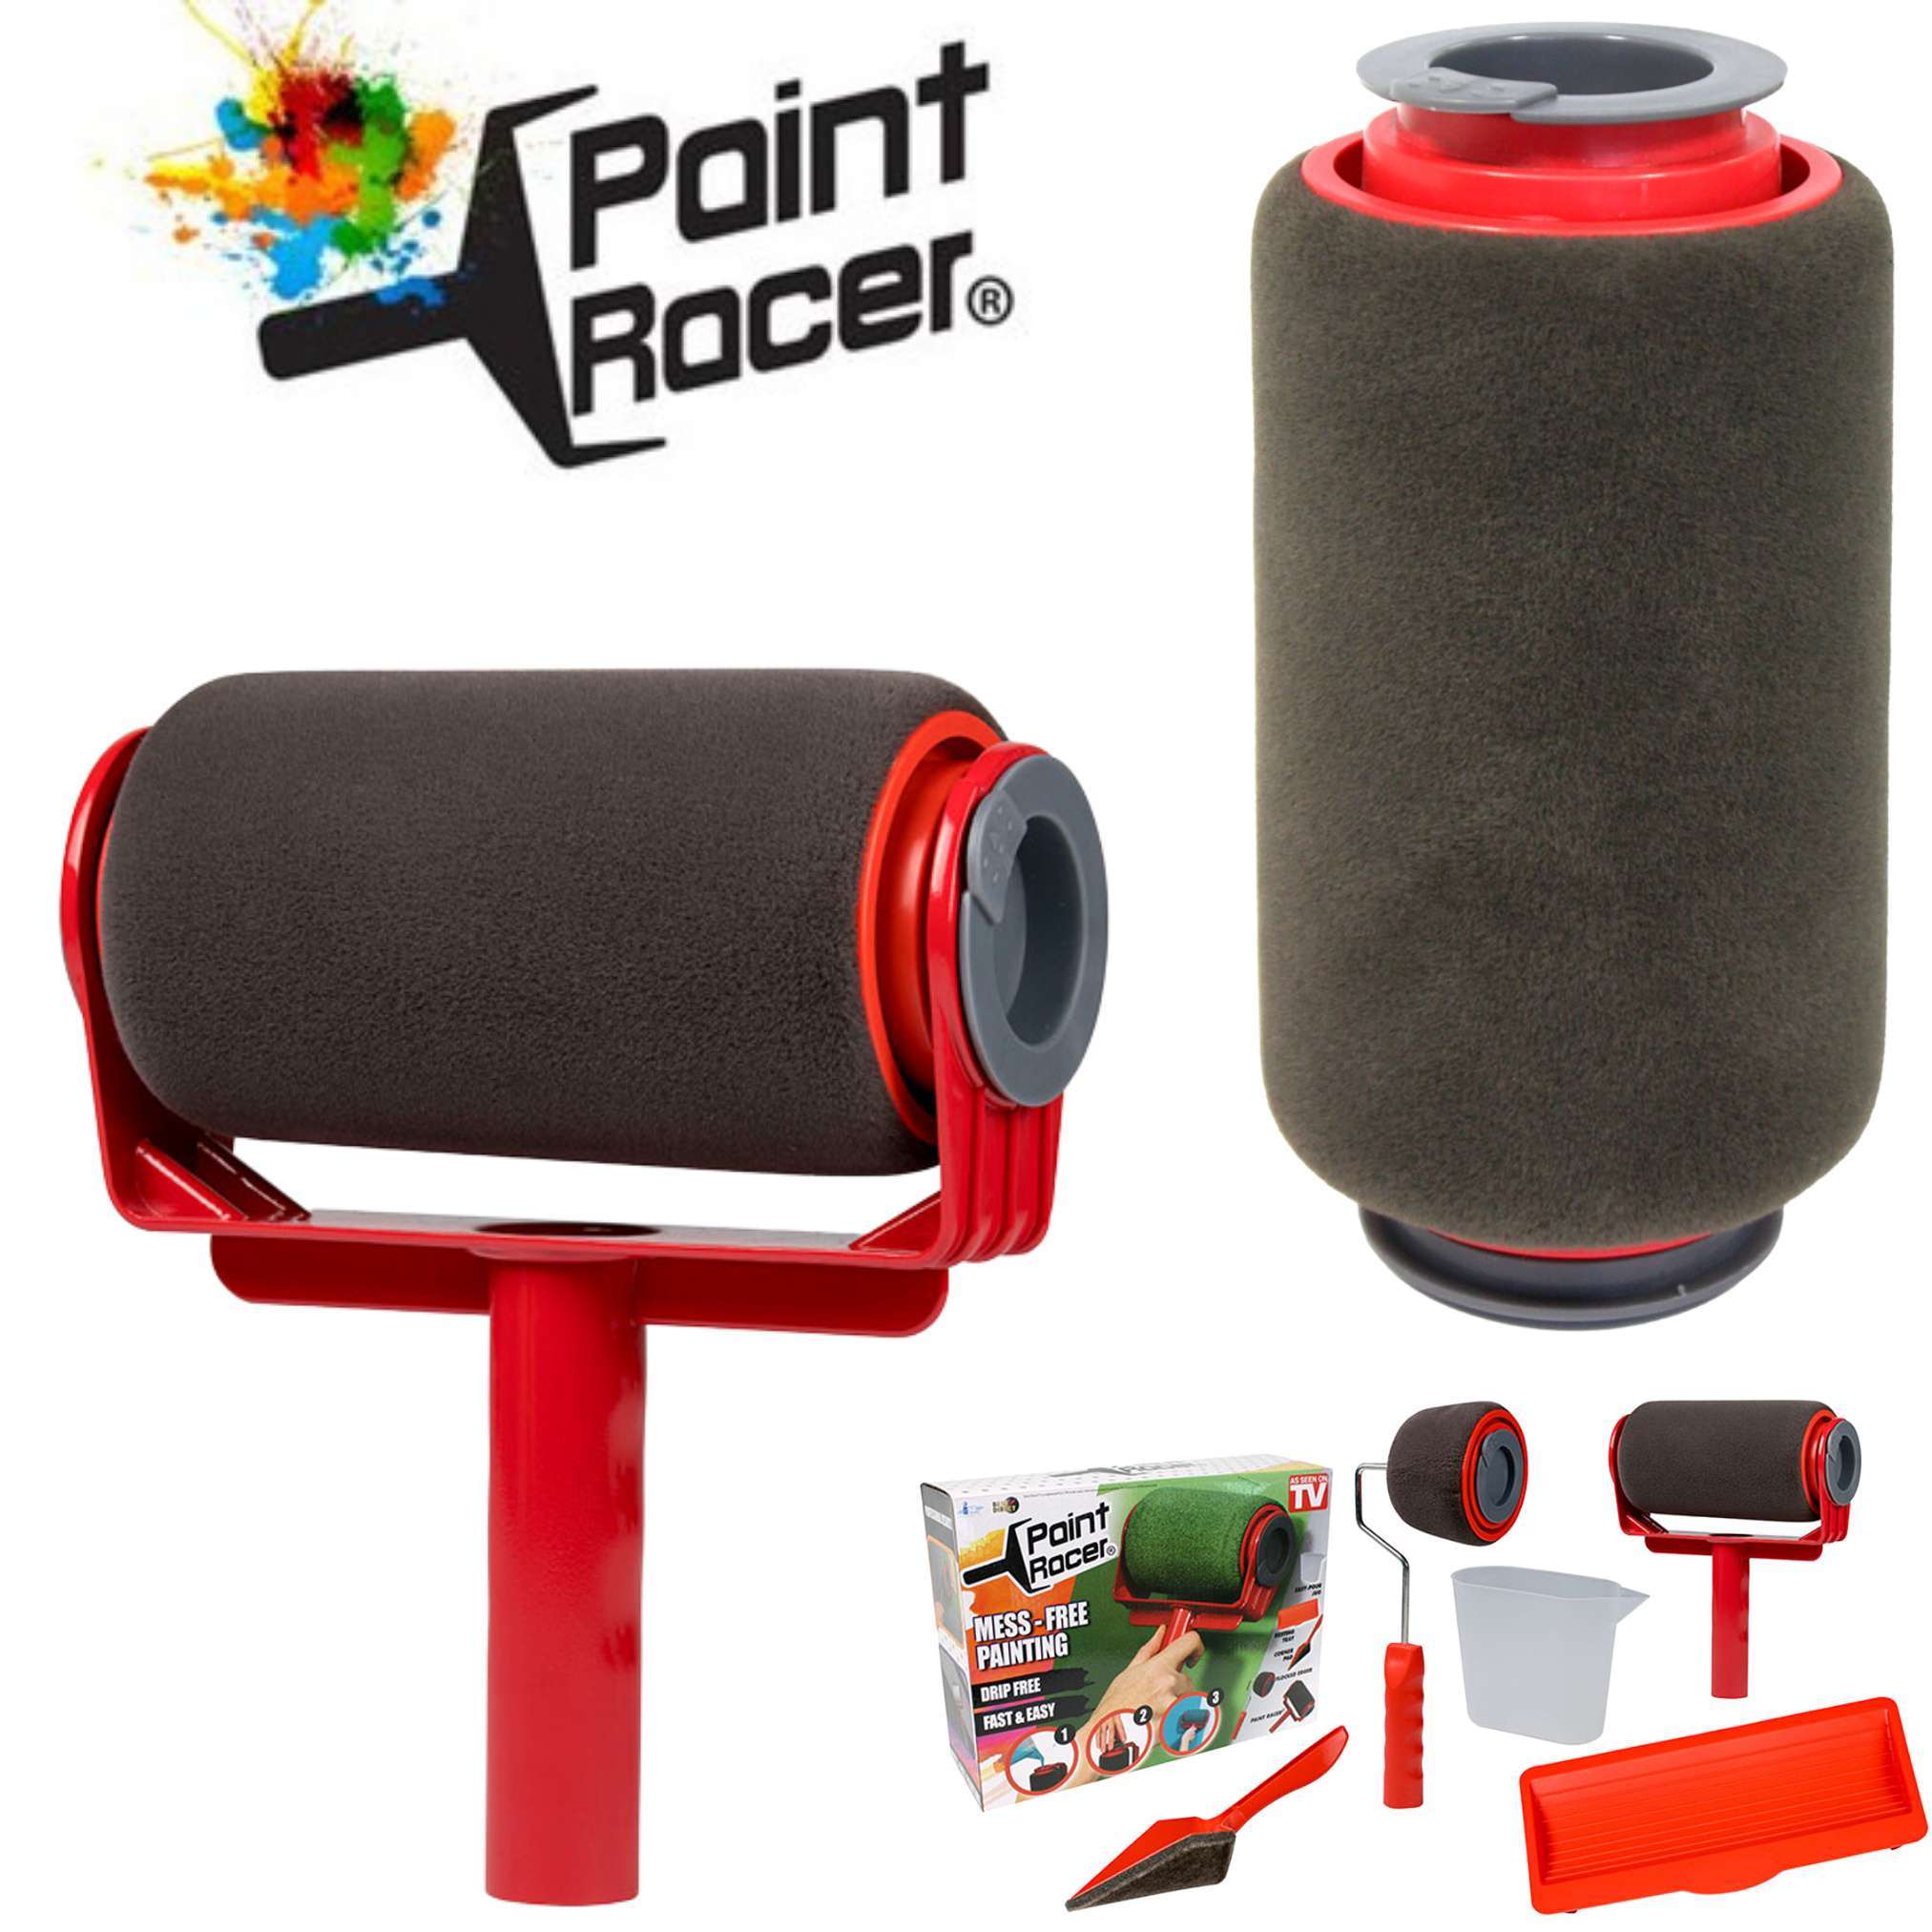 Paint Racer® befüllbarer Farbroller inkl.